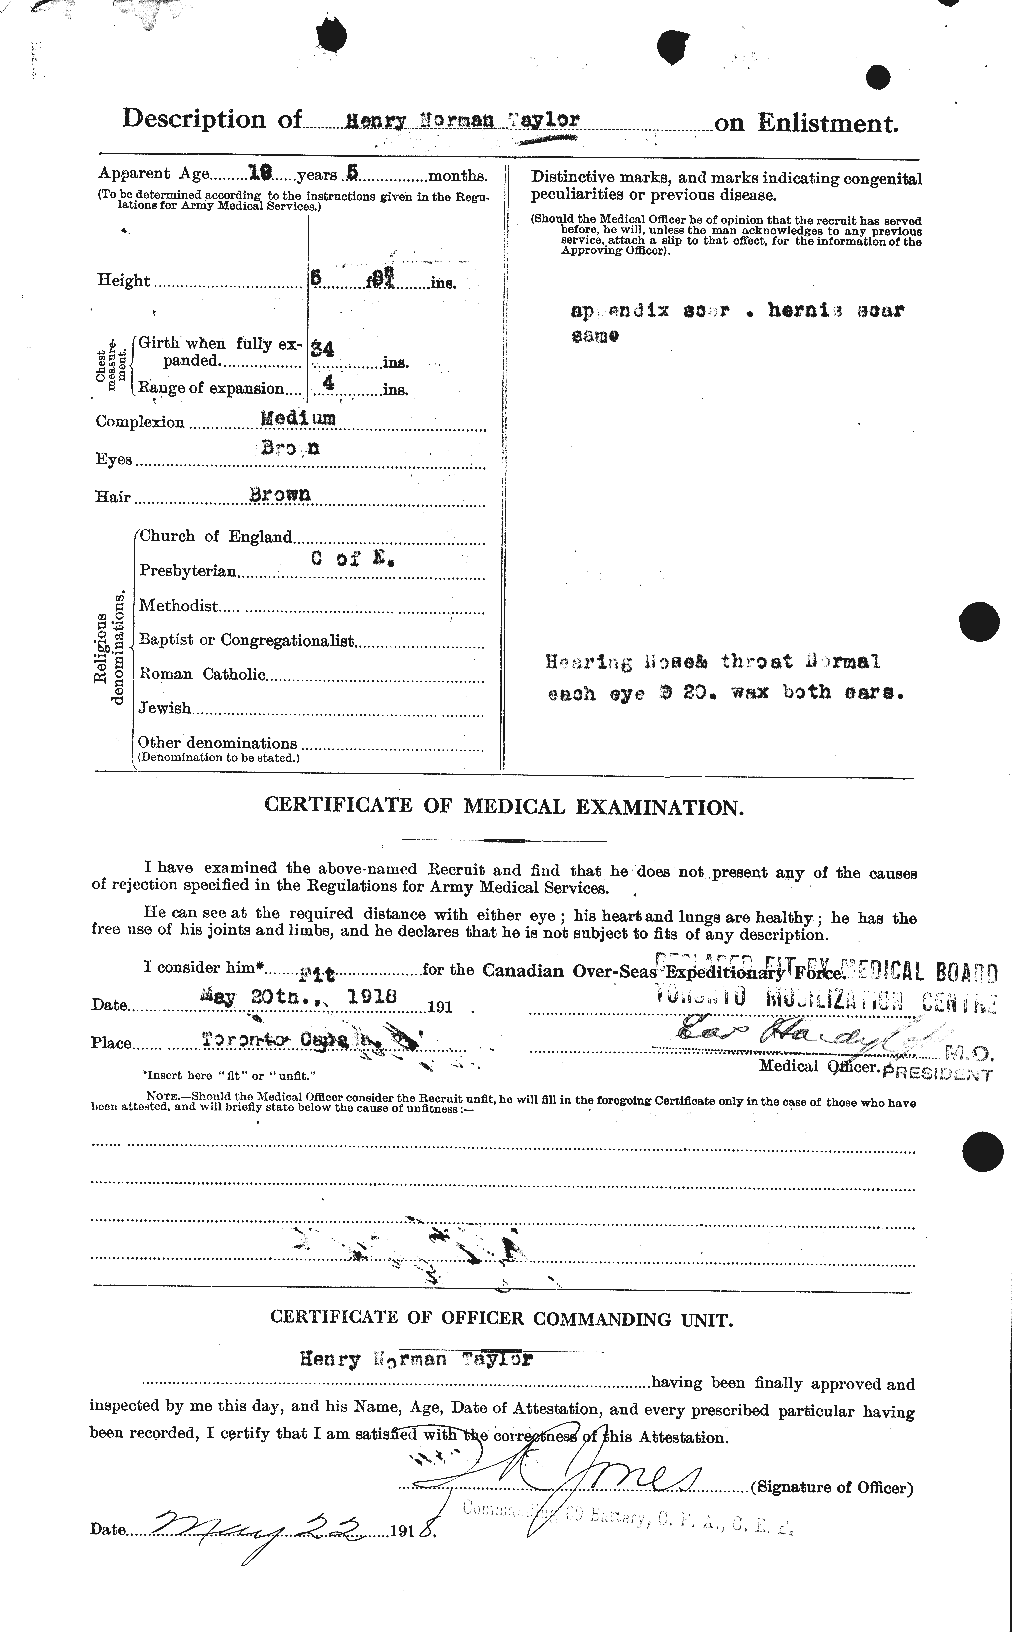 Dossiers du Personnel de la Première Guerre mondiale - CEC 626552b